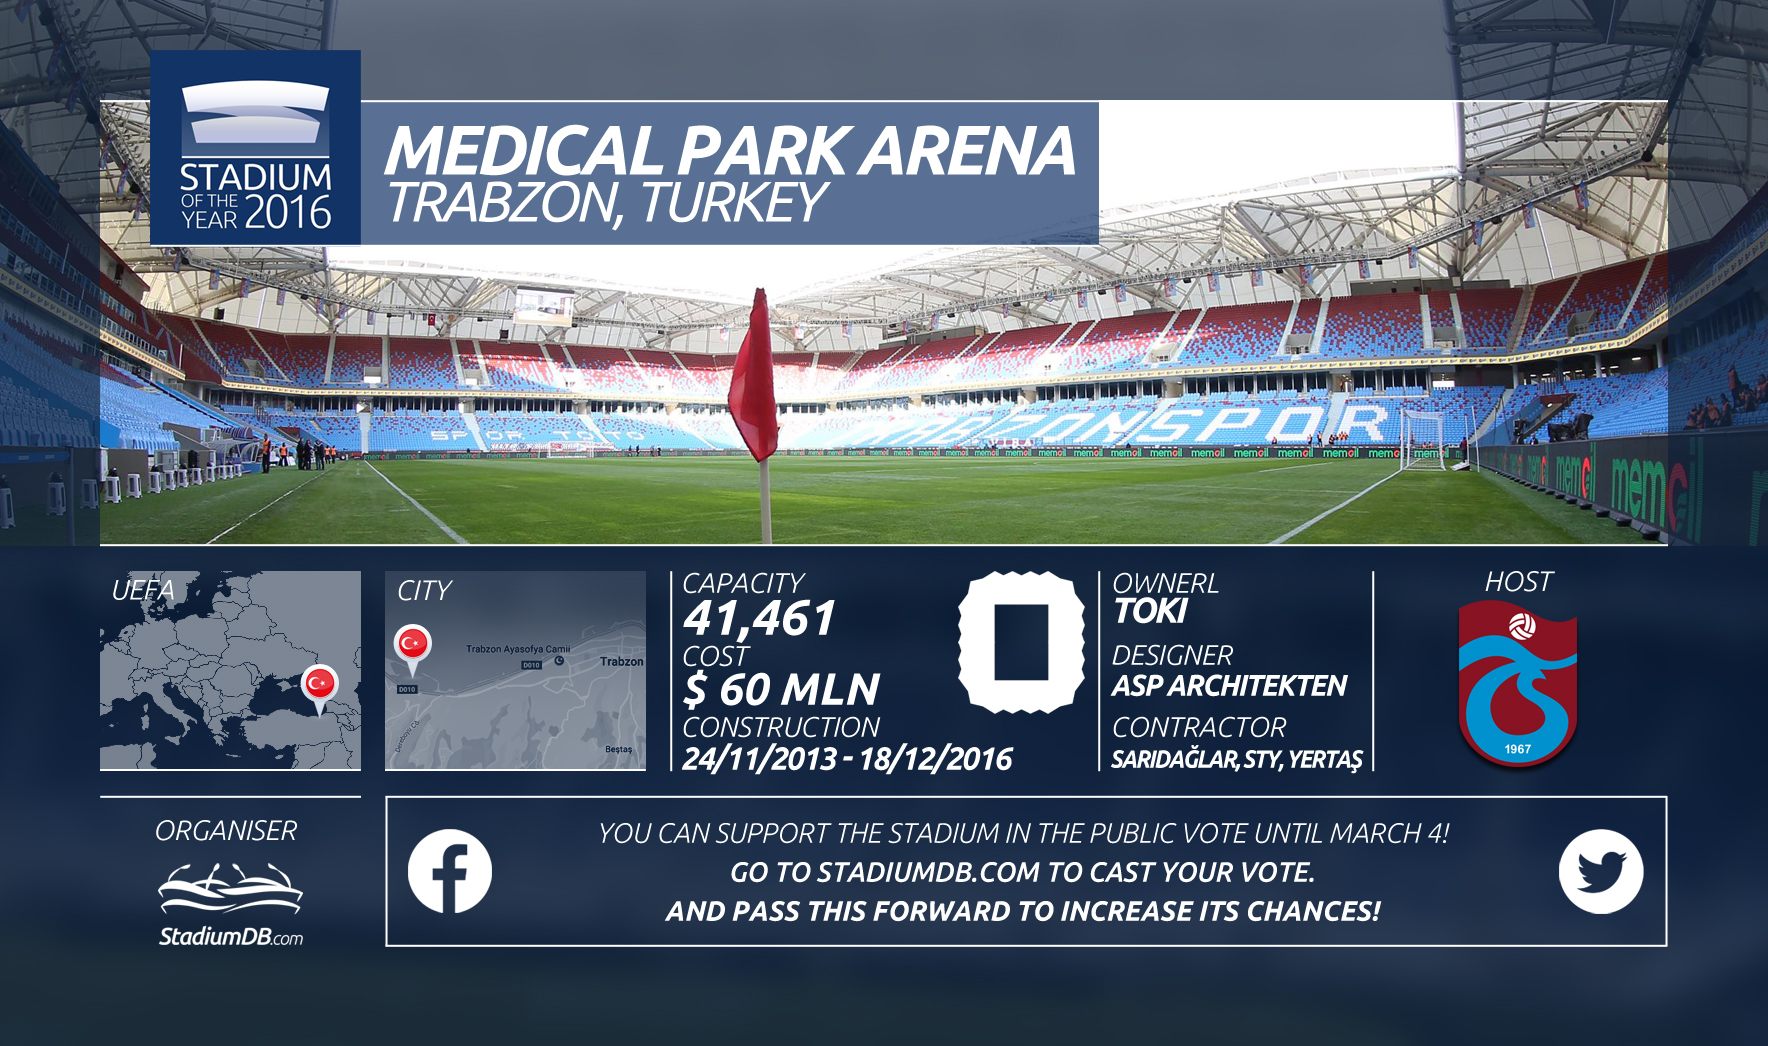 Medical Park Arena